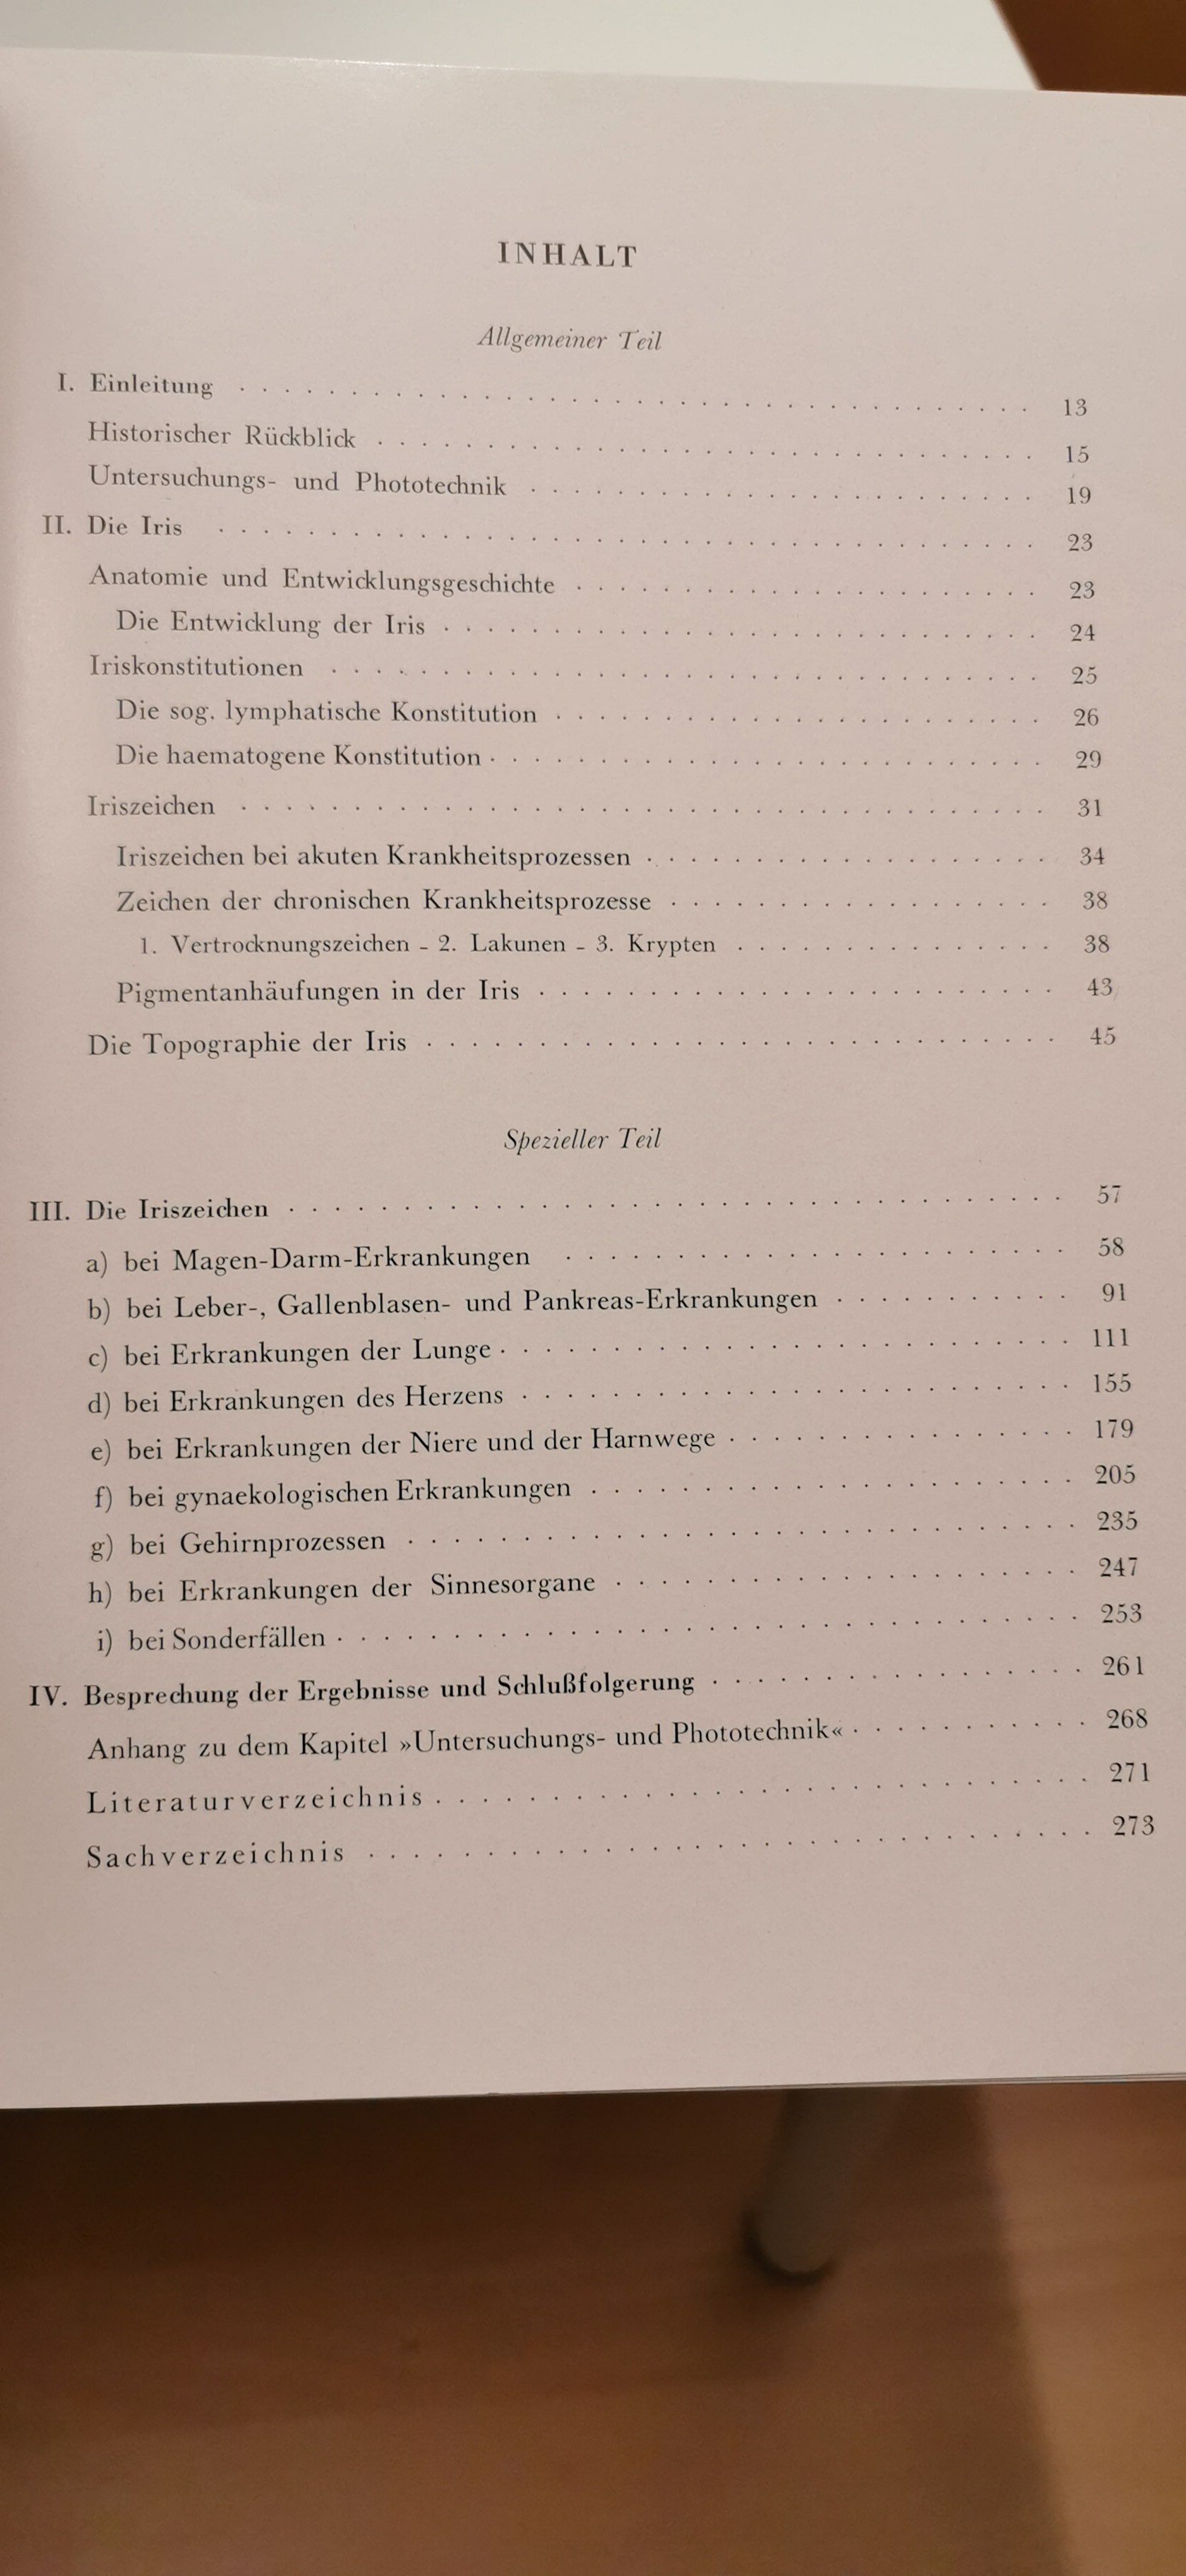 Buch: B169 Klinische Prüfung der Organ- und Krankheitszeichen in der Iris.